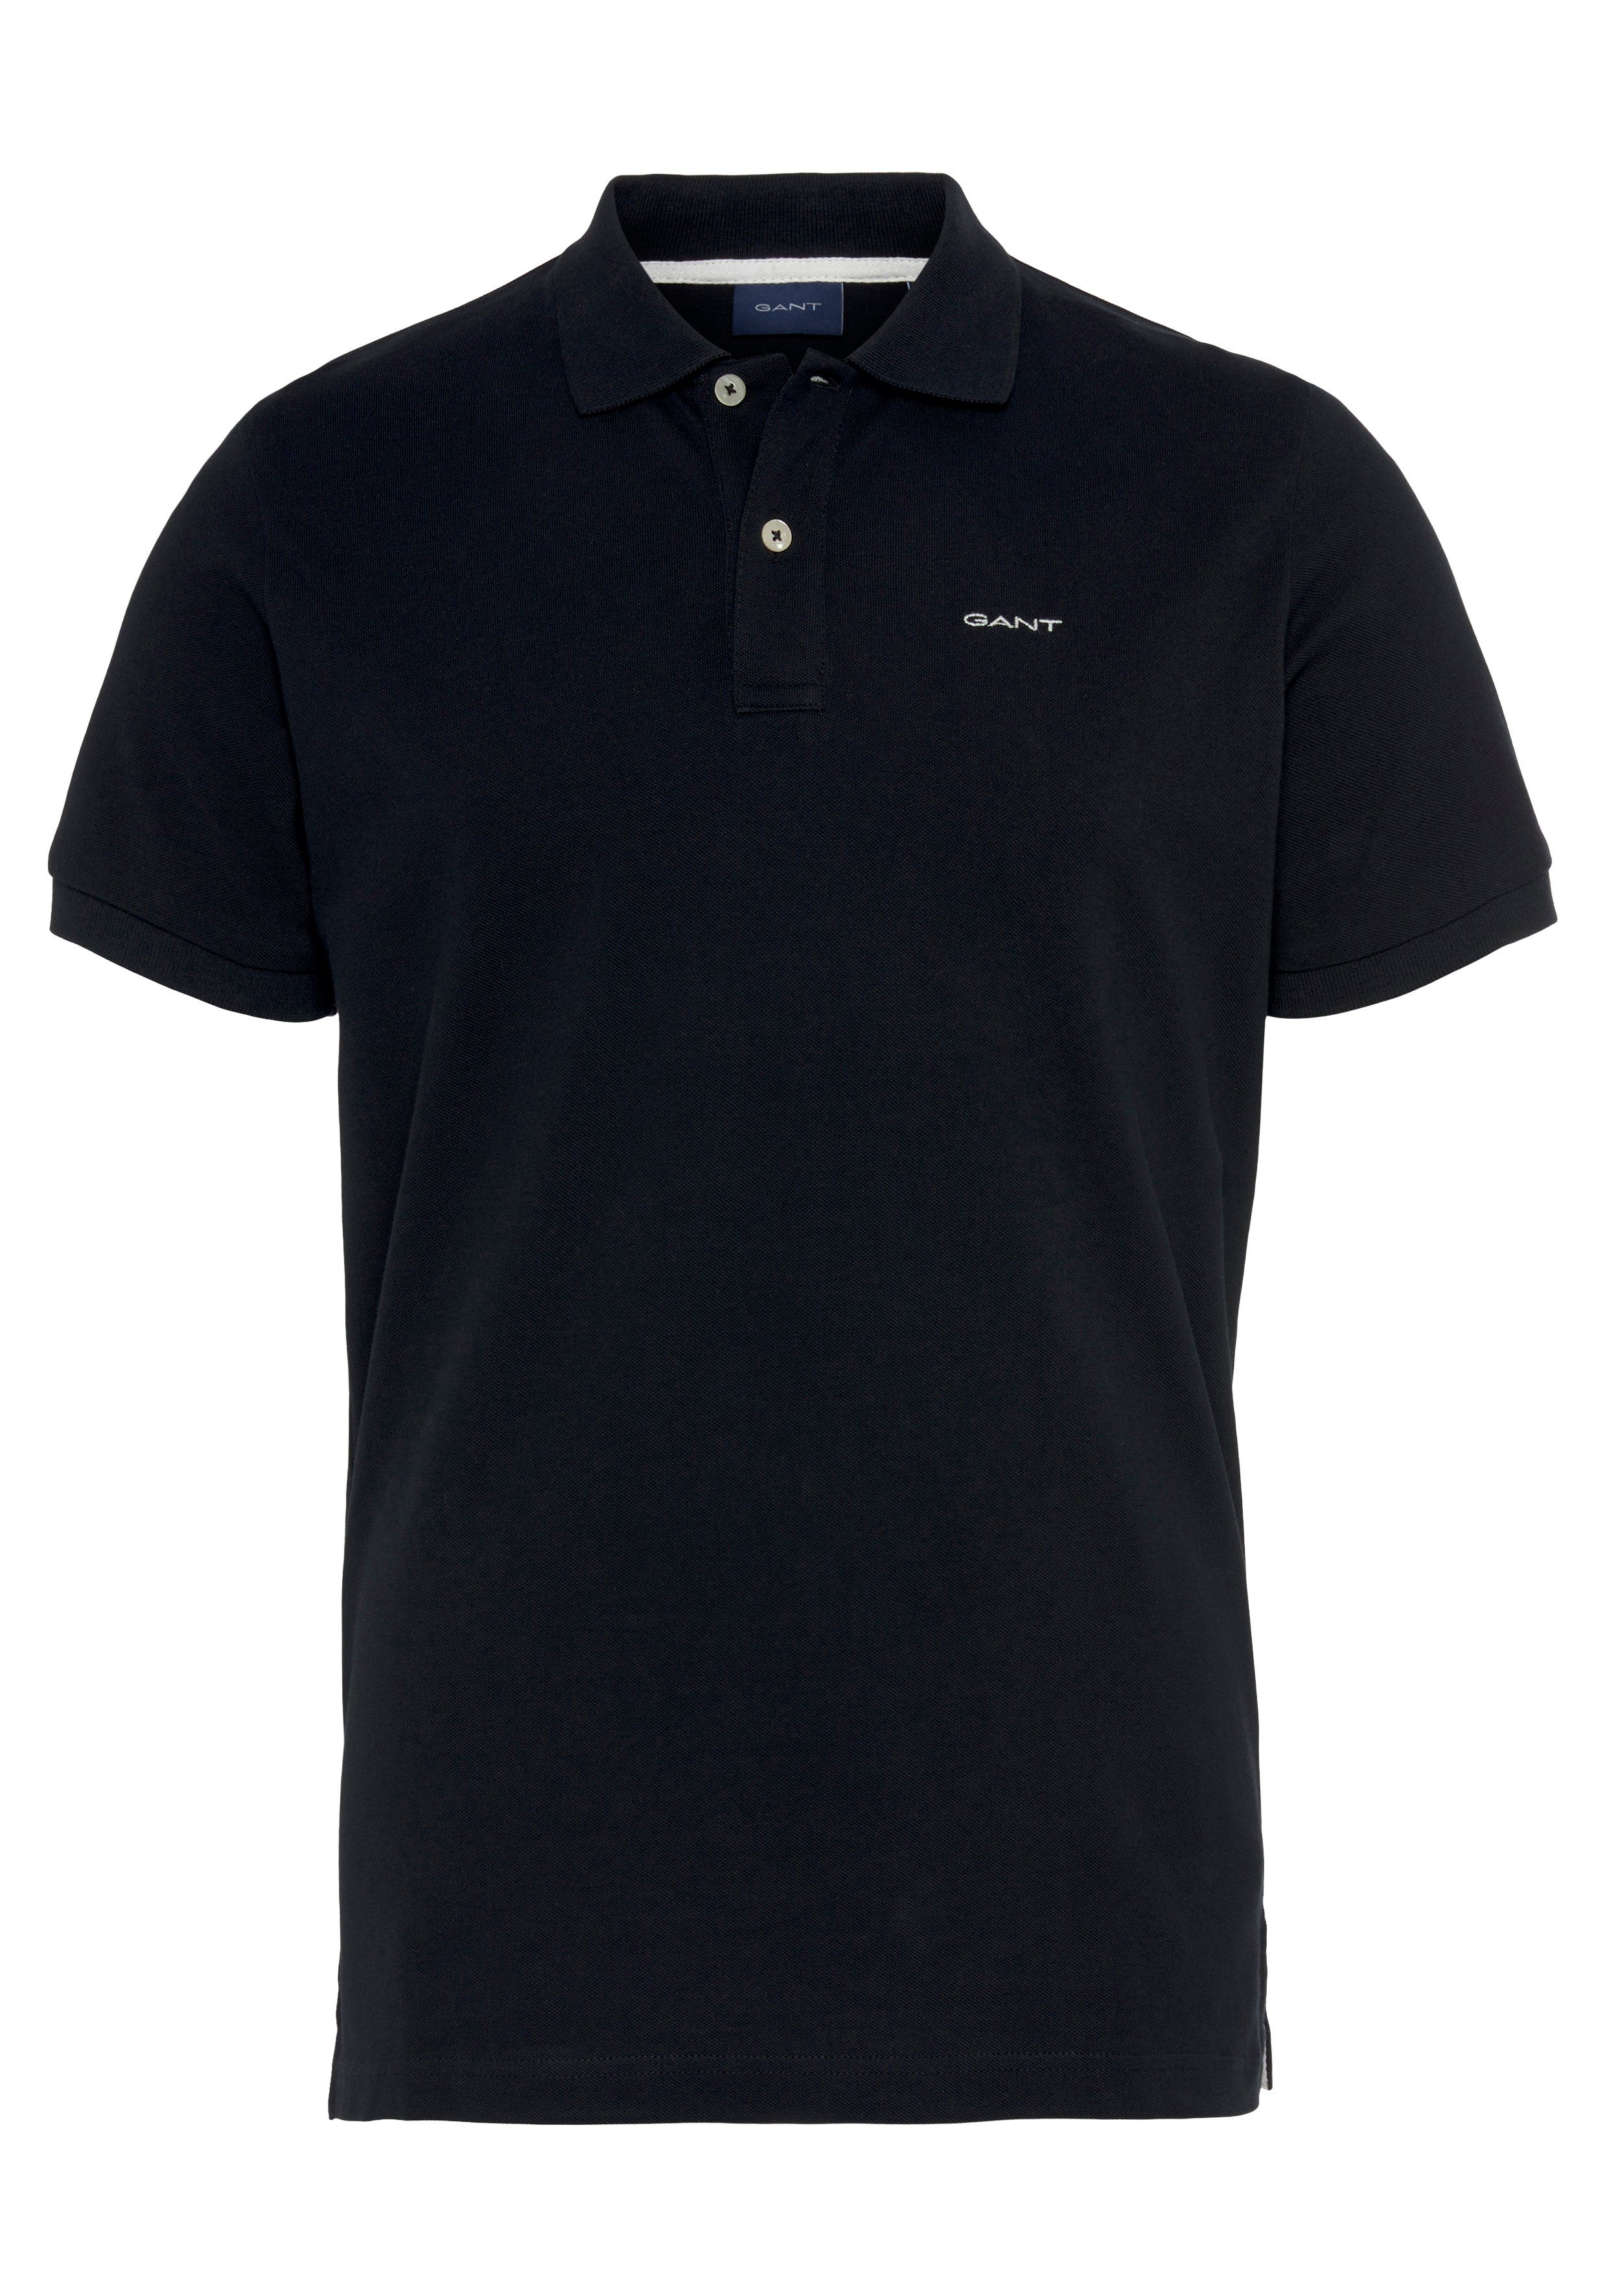 Gant Poloshirt MD. KA PIQUE Smart Regular RUGGER Fit, Shirt, schwarz Premium Piqué-Polo Casual, Qualität